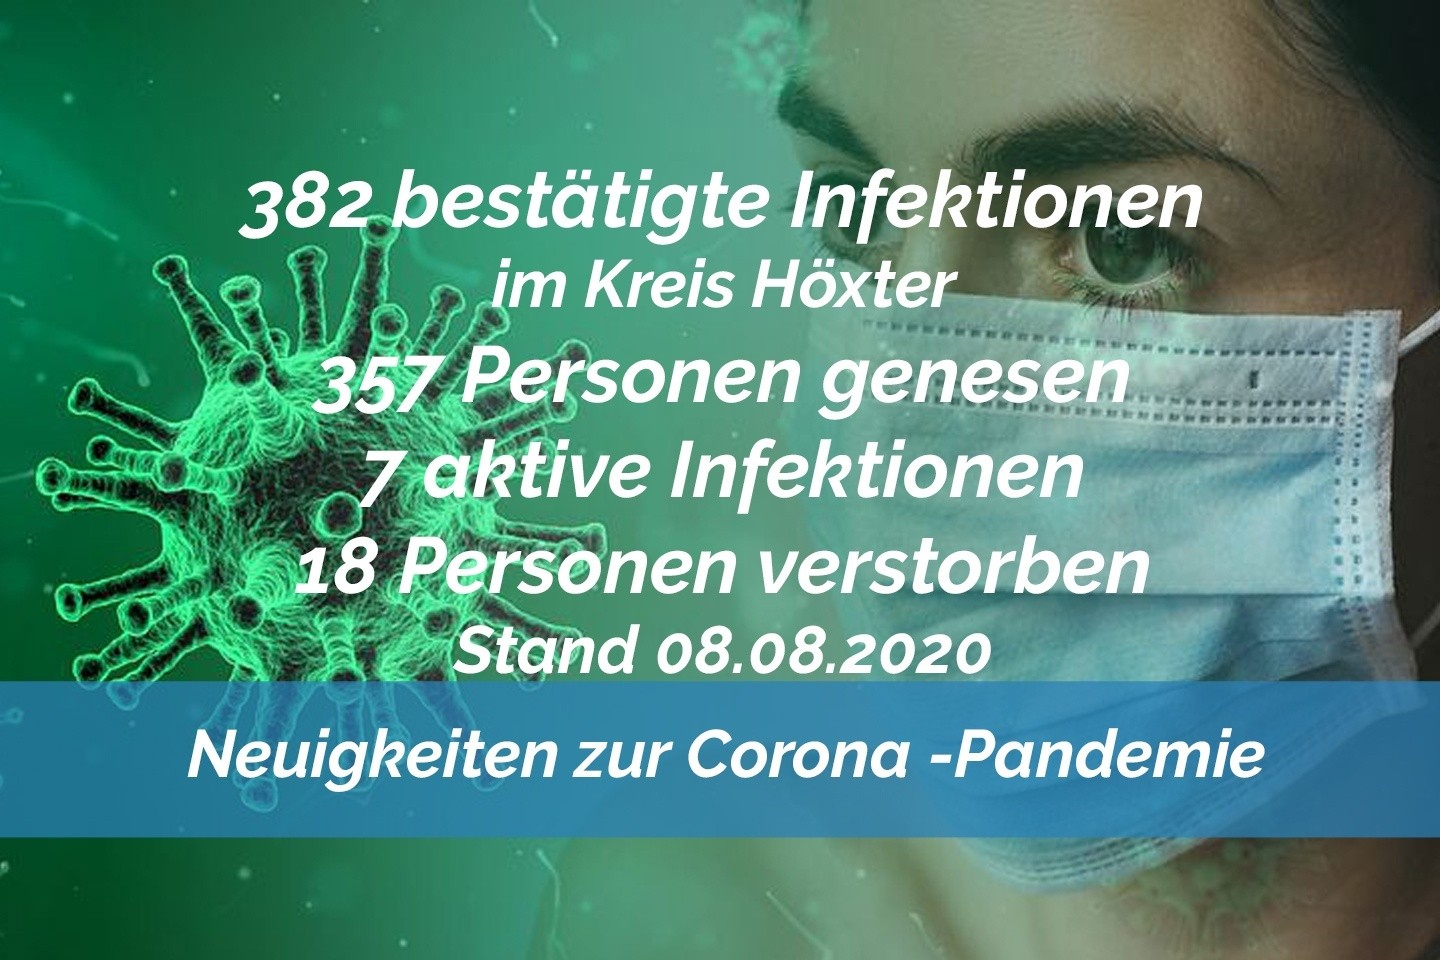 Update 08. August: 3 neue nachgewiesene Infektionen im Kreis Höxter - Die Zahl steigt auf 7